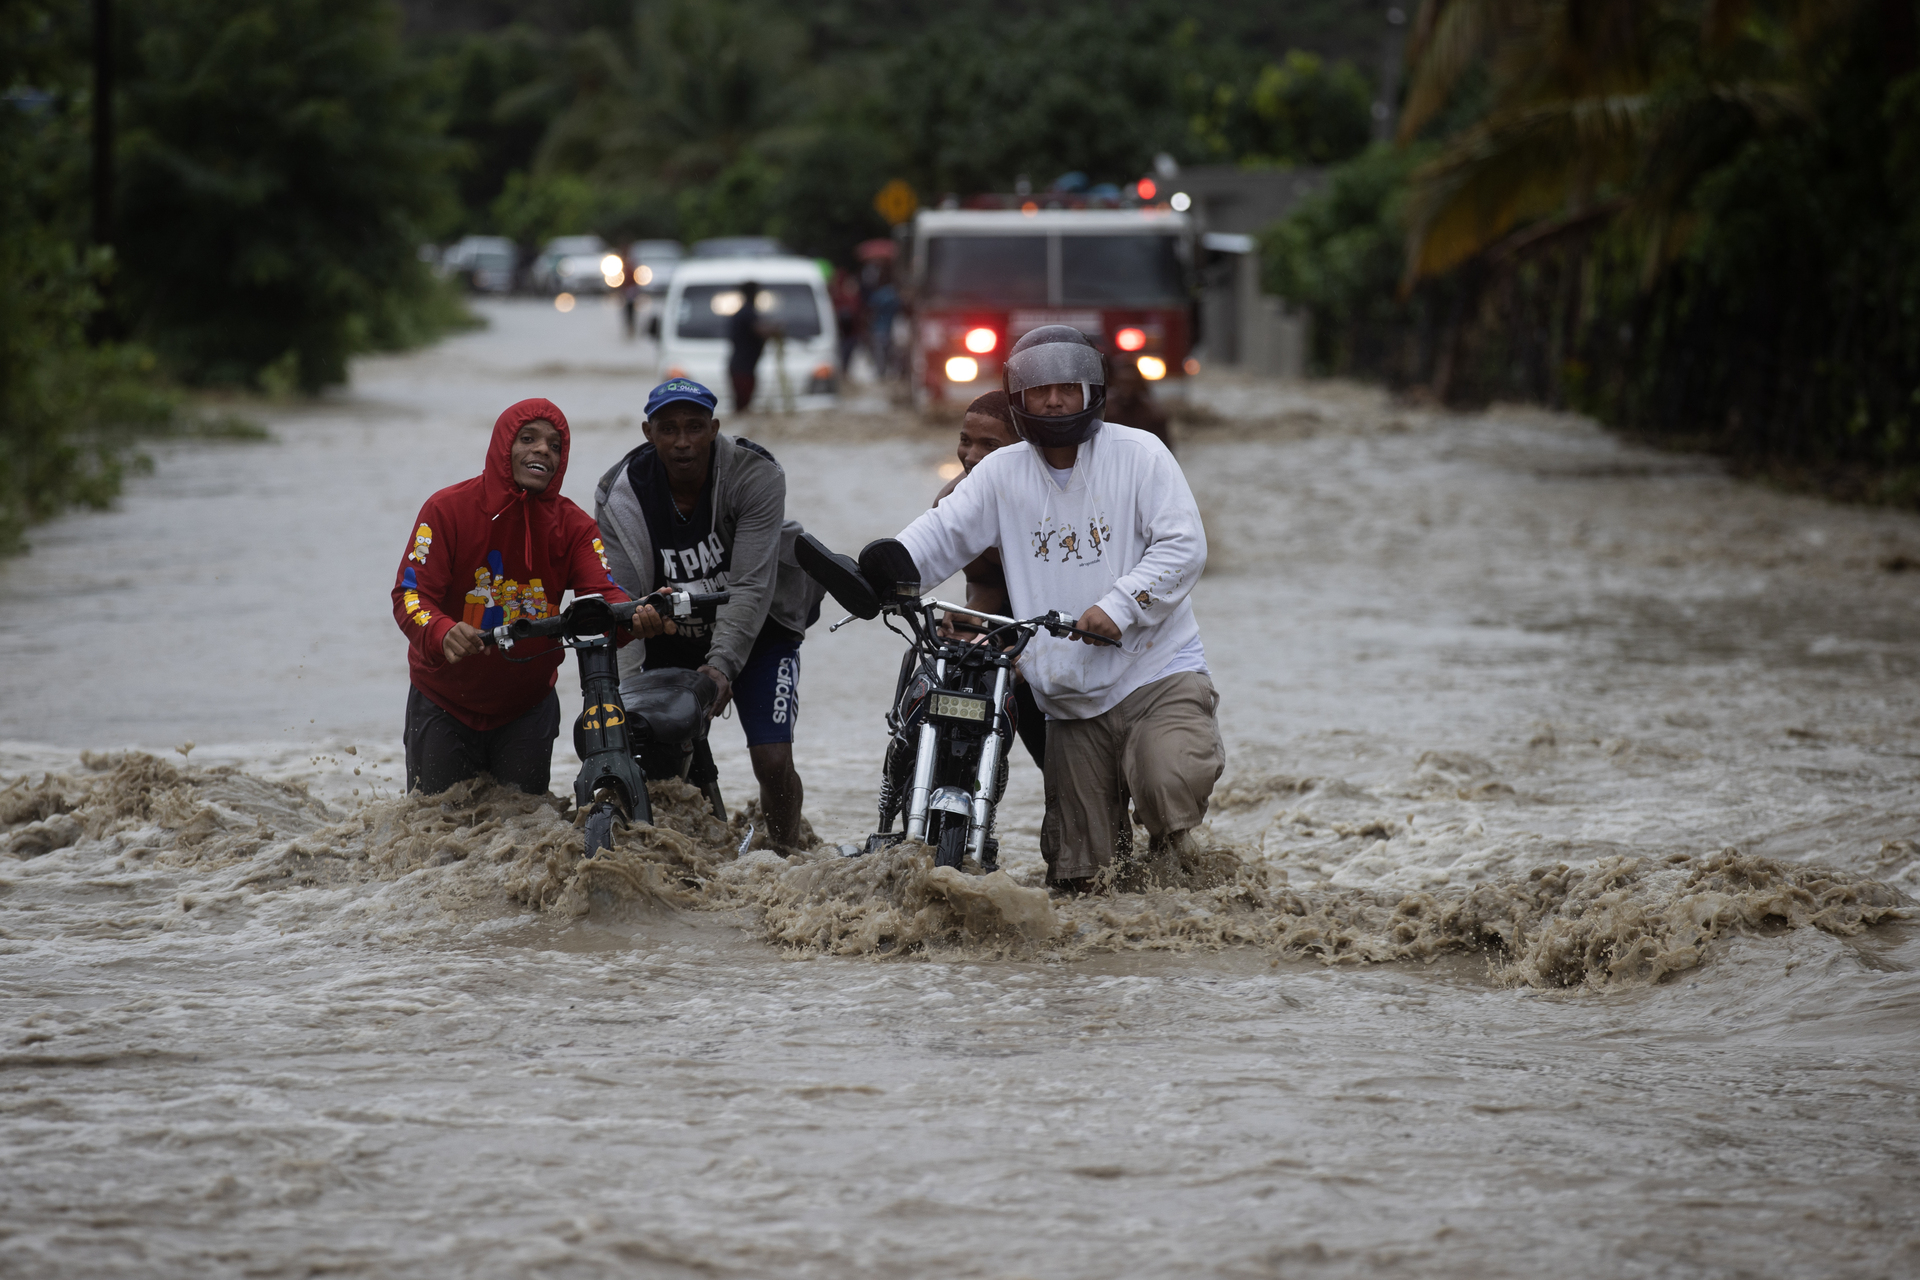 Lluvias torrenciales dejan al menos nueve muertos en República Dominicana